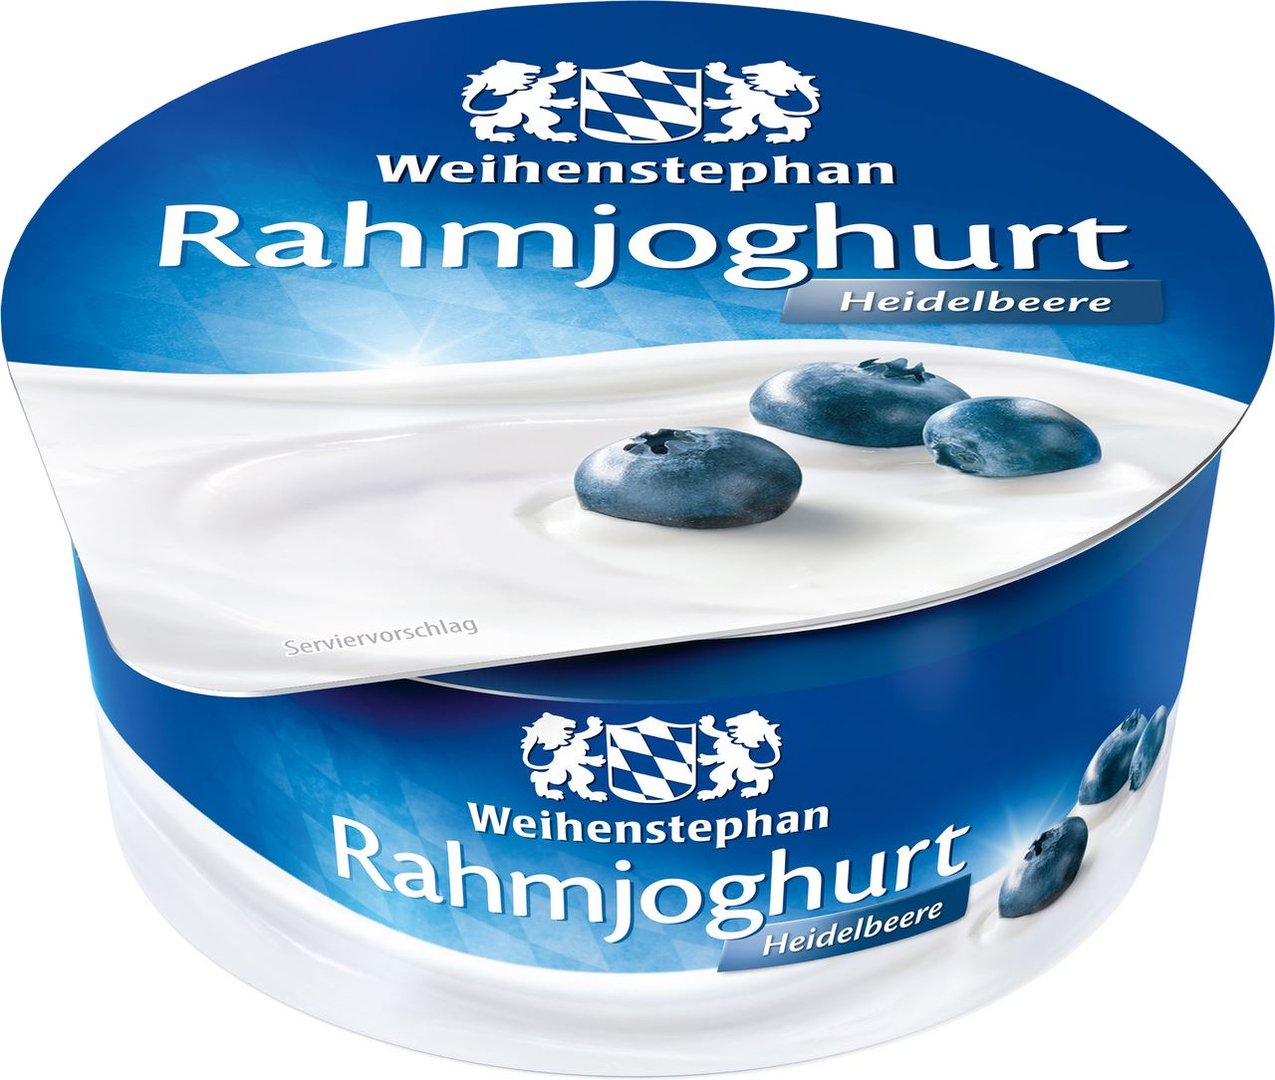 Weihenstephan - Rahmjoghurt Heidelbeere 10 % Fett im Milchanteil - 150 g Becher